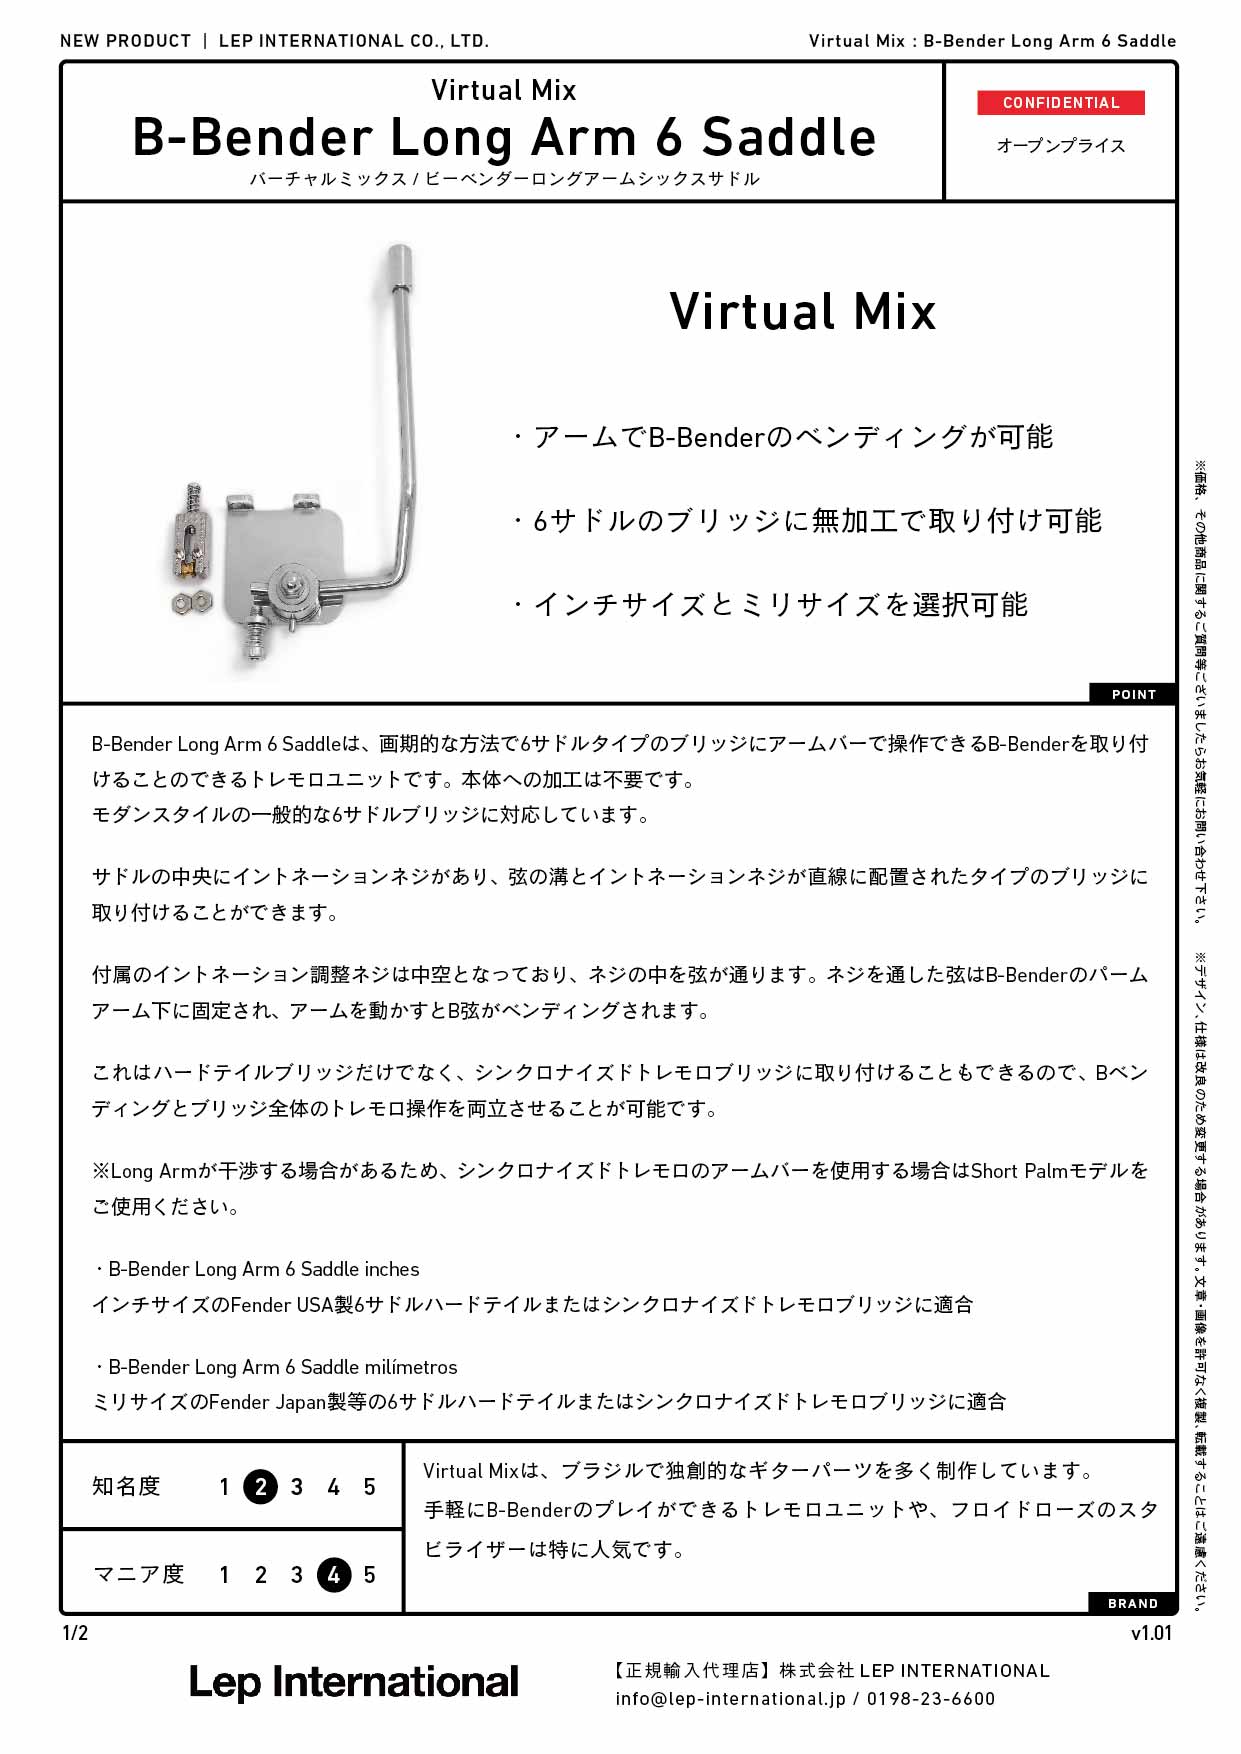 Virtual Mix / B-Bender Long Arm 6 Saddle